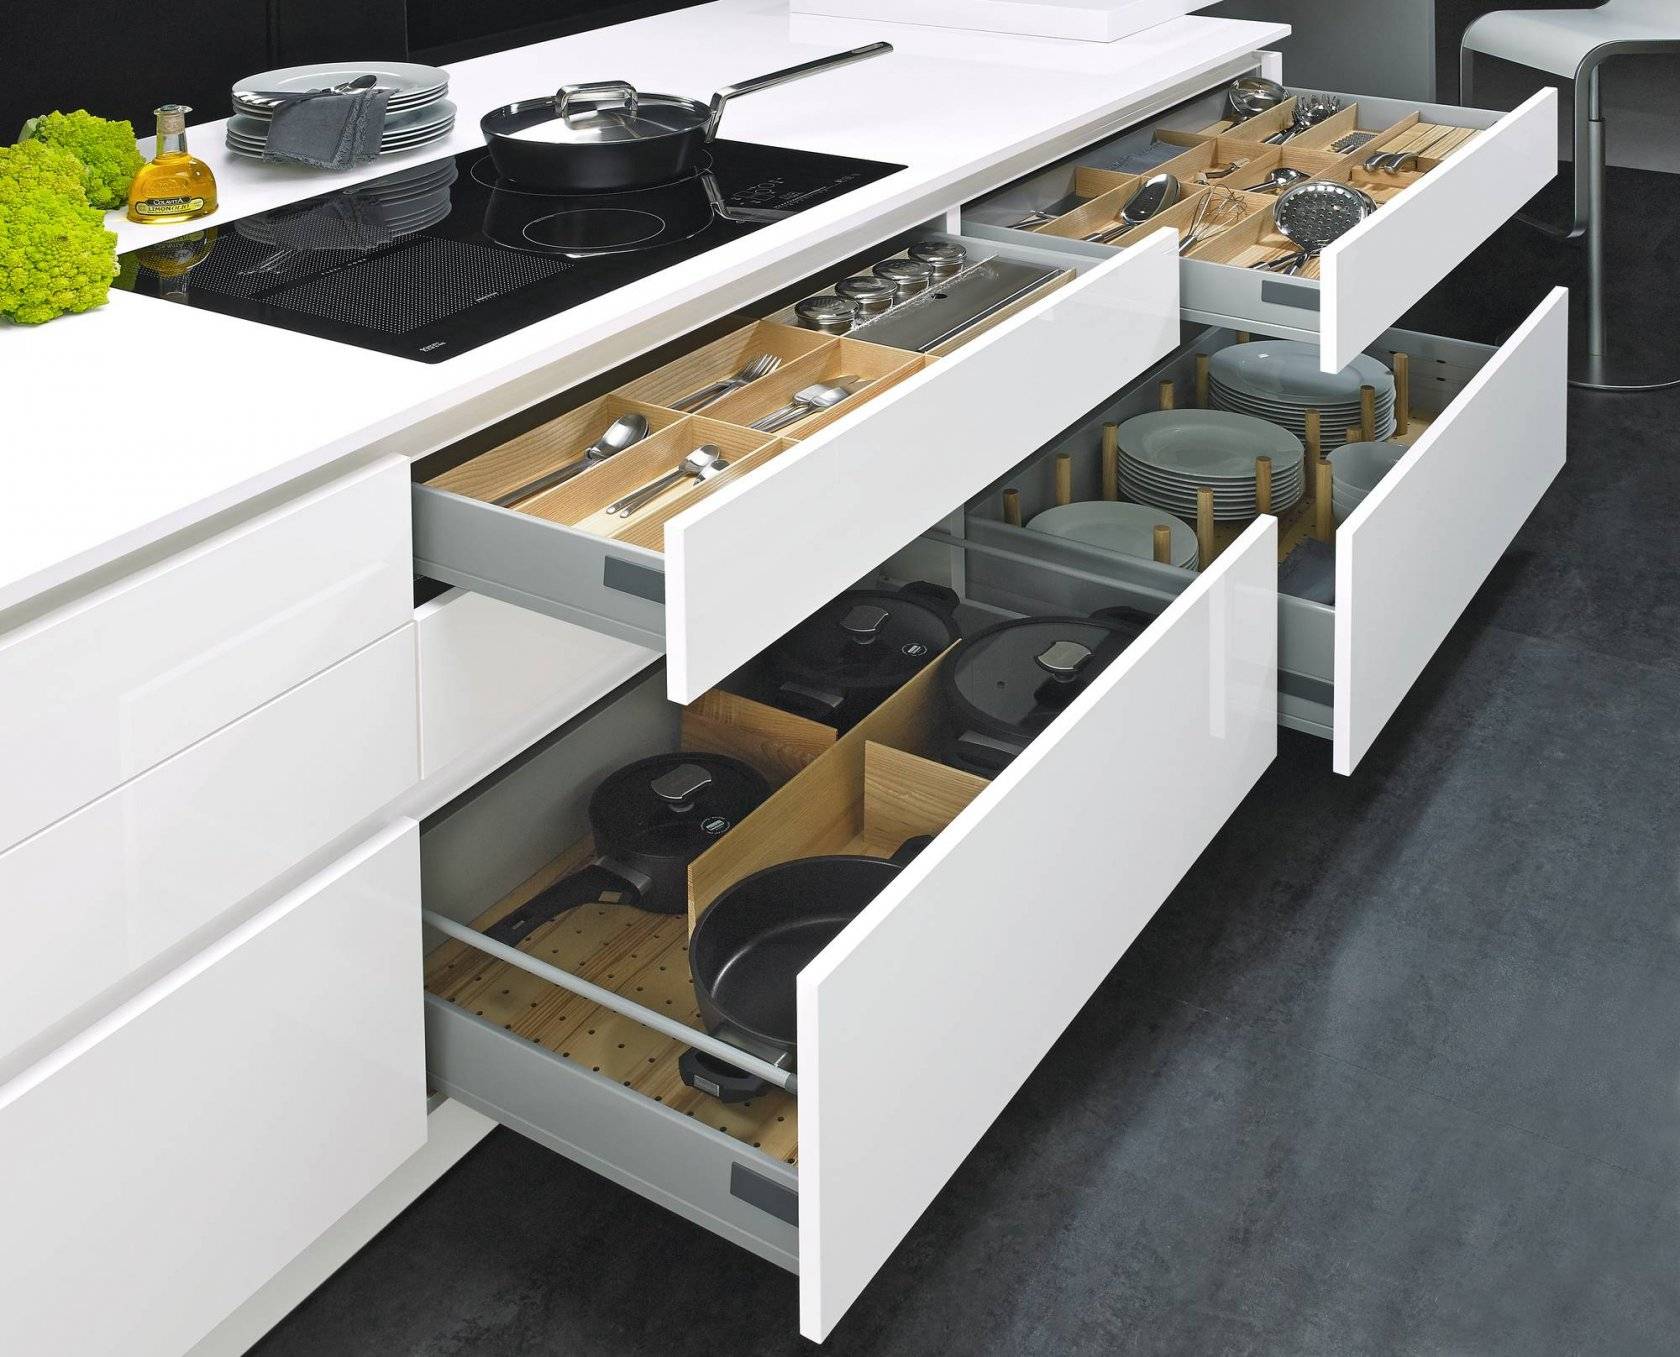 Шкафы кухонные навесные эконом. выбираем наполнение для кухонных шкафов: лучшие идеи для грамотной организации пространства